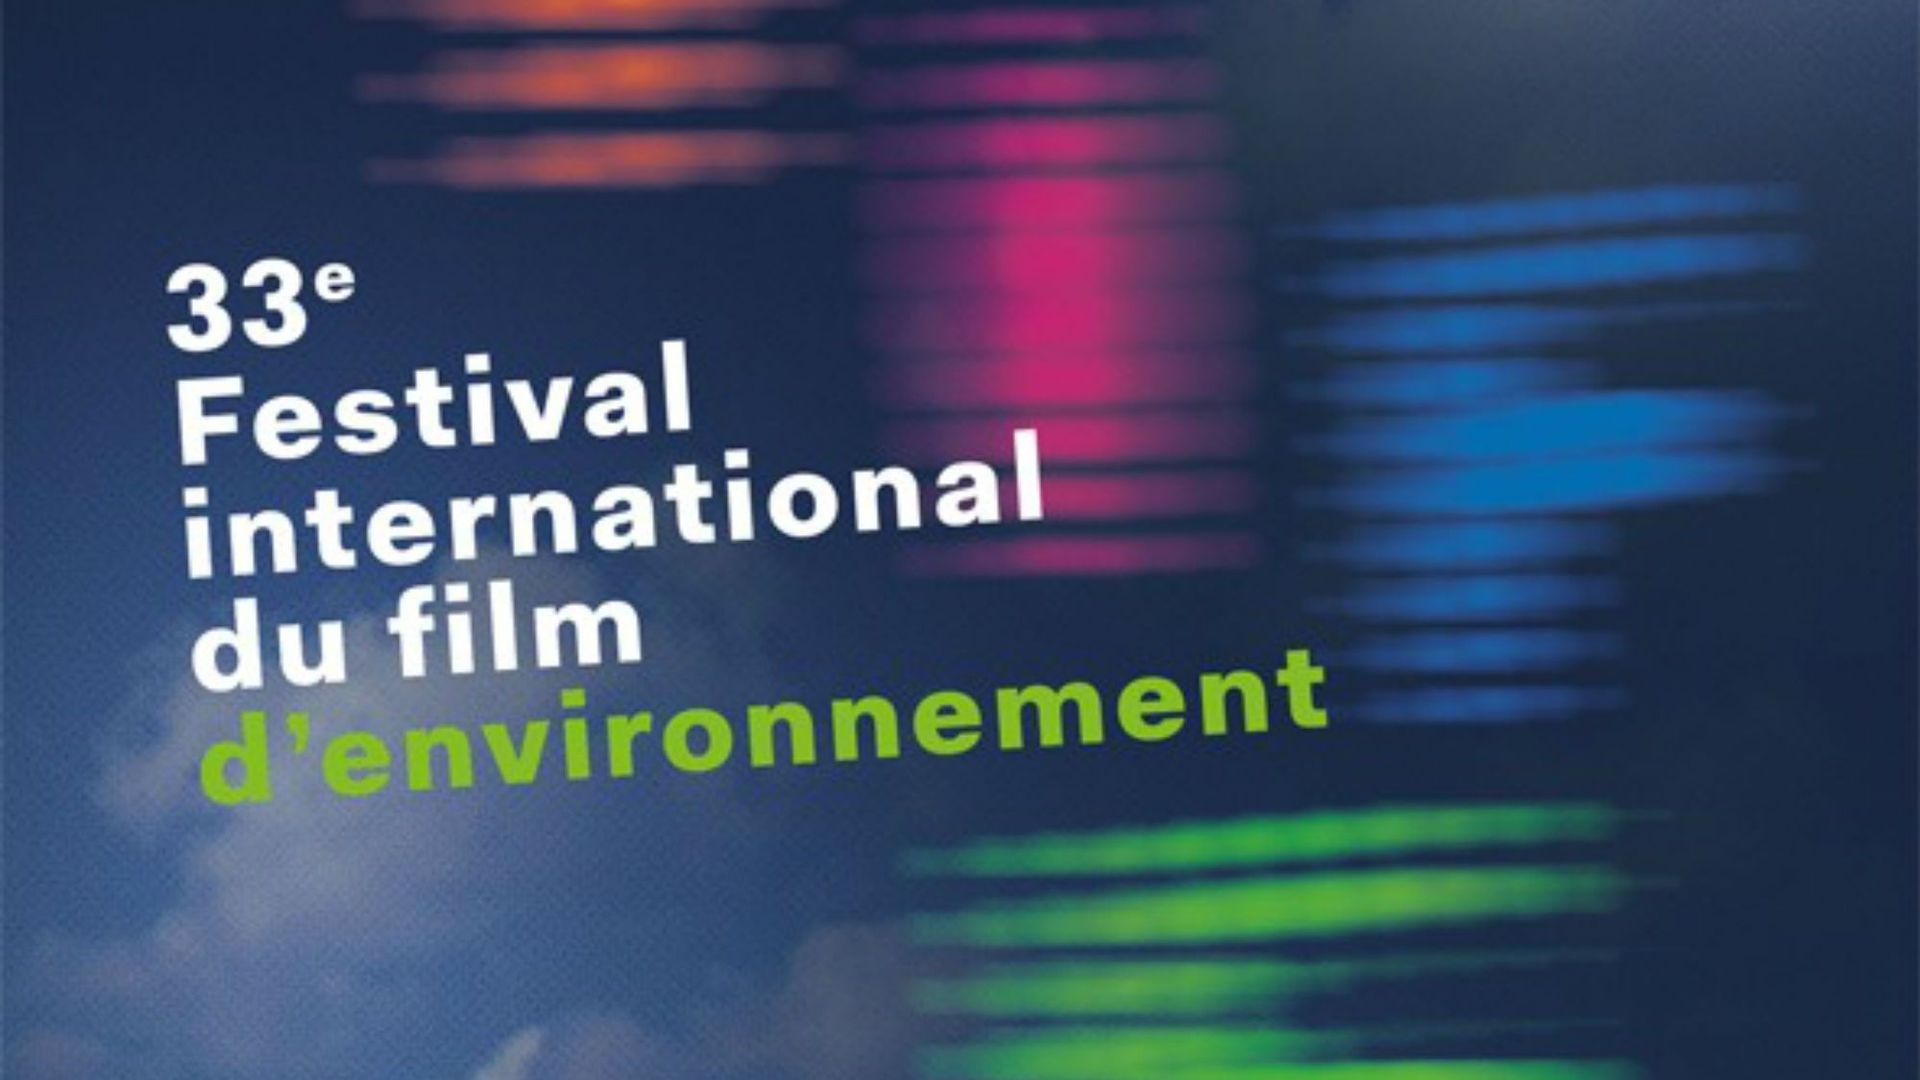 Plus d'une centaine de films et webdocs au menu du 33e Festival international du film d'environnement